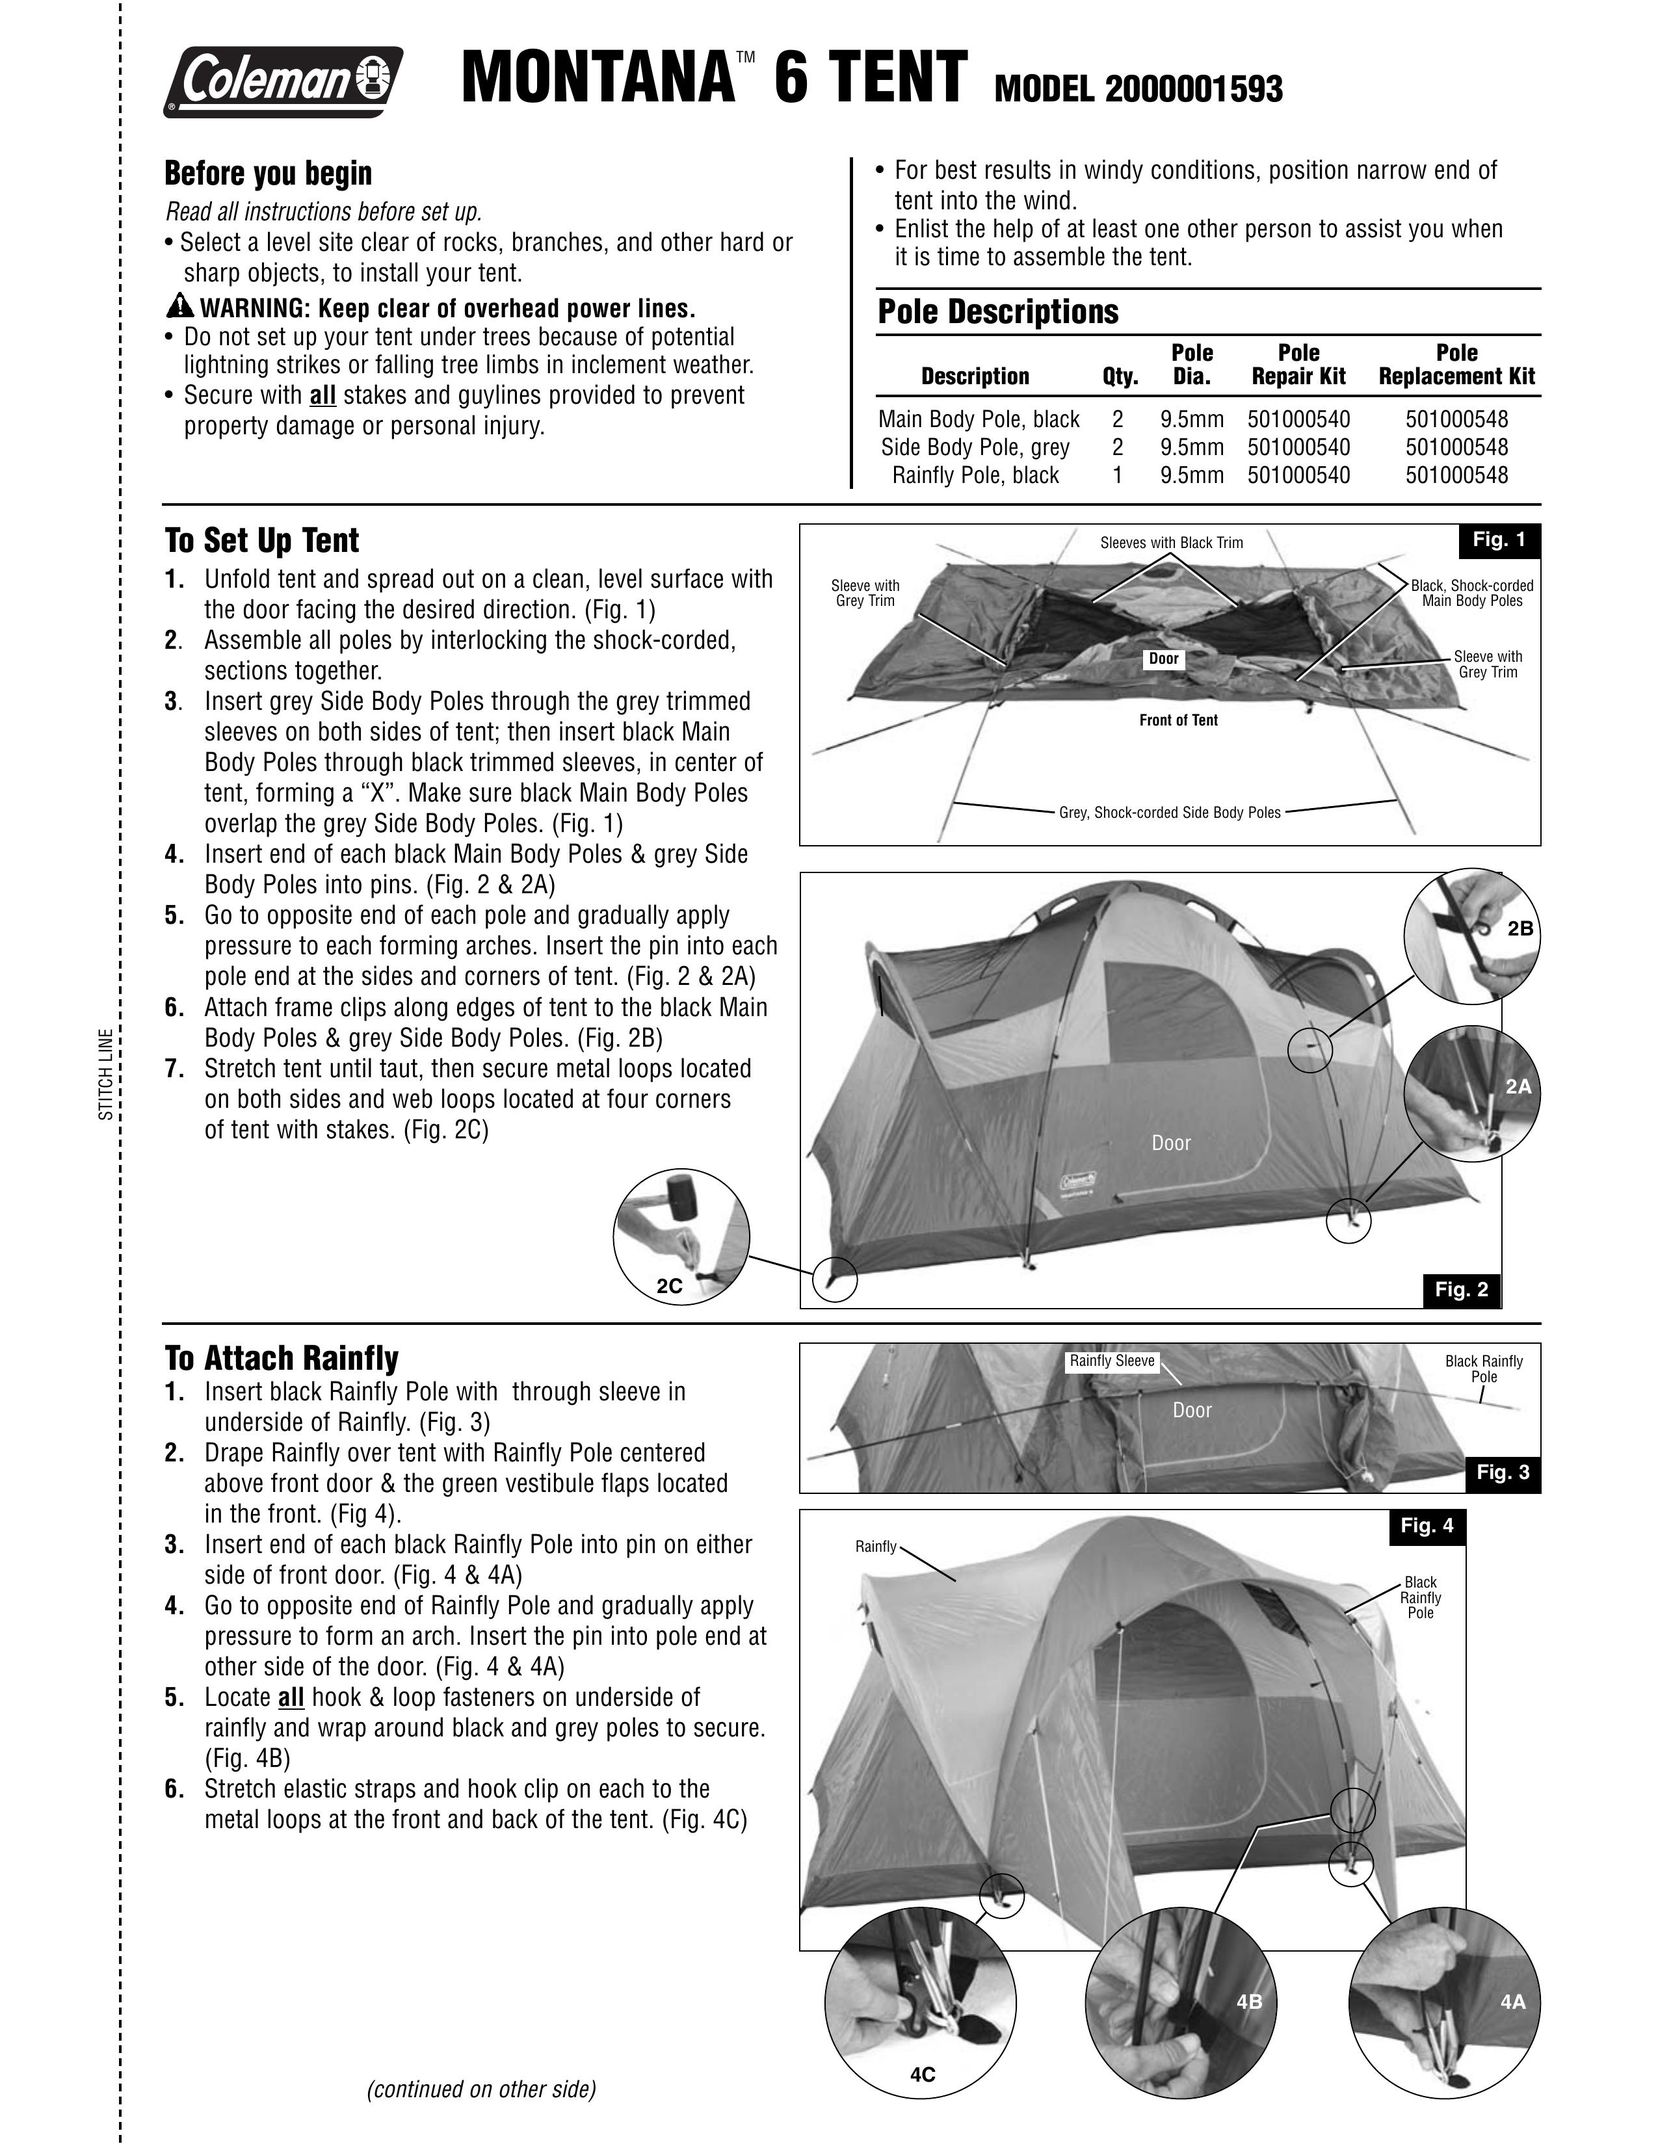 Coleman 2000001593 Tent User Manual